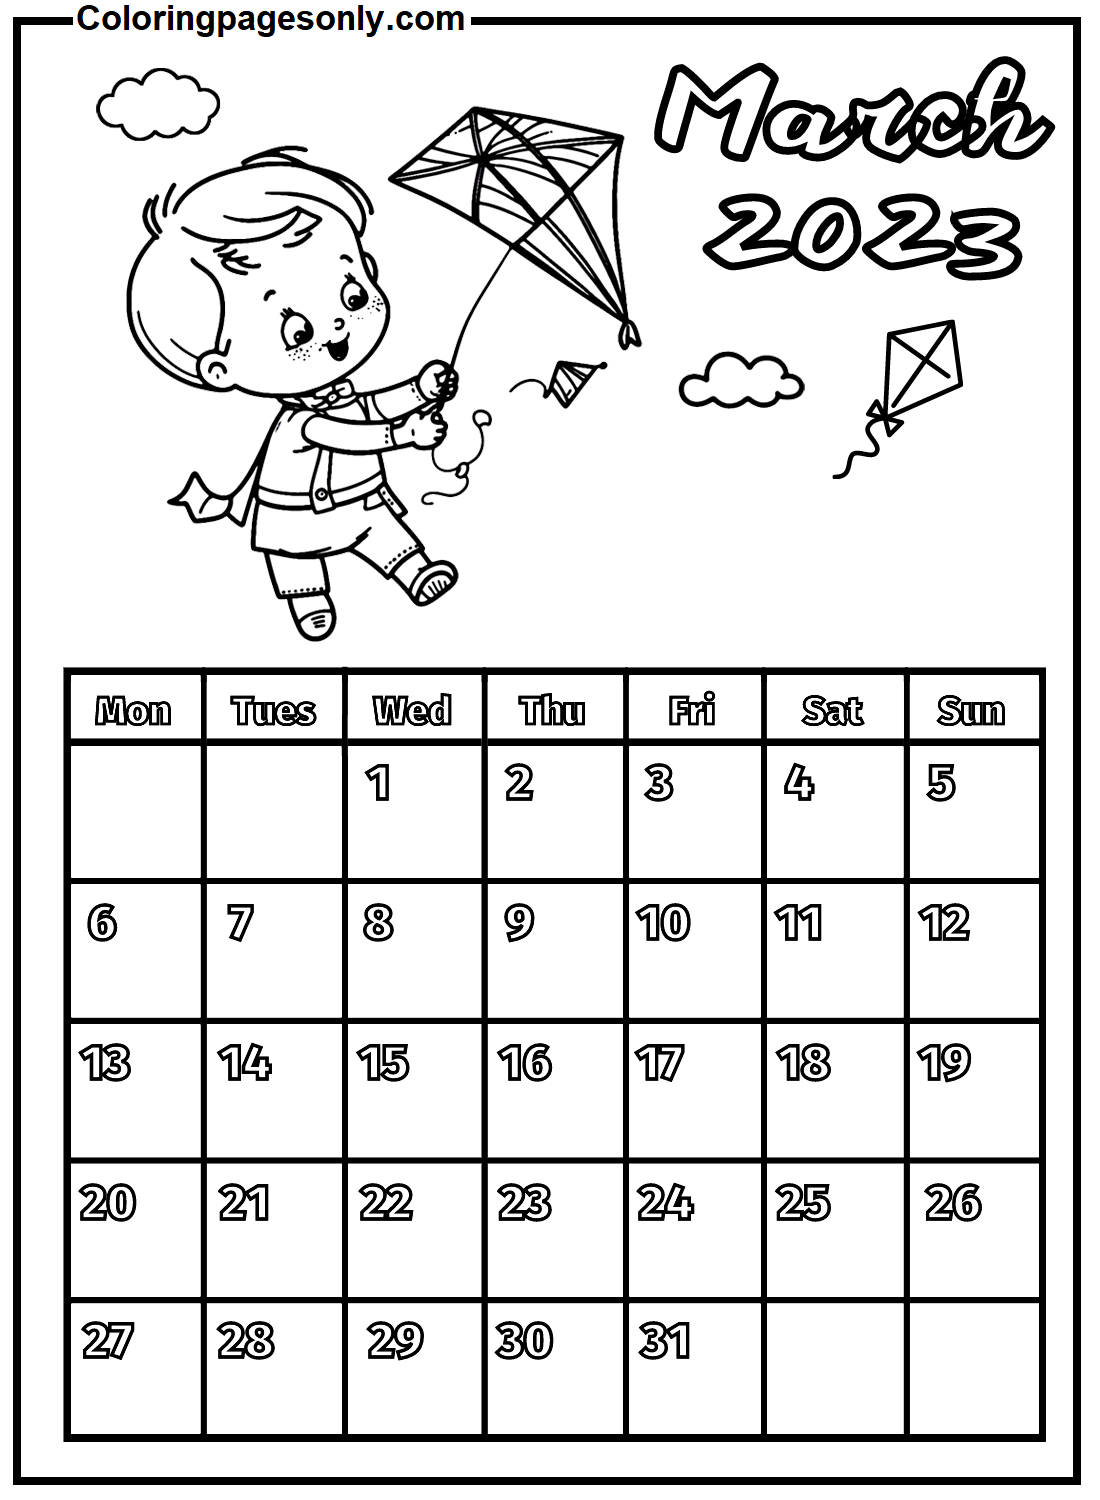 Calendario Gratis Marzo 2023 a partir de Marzo 2024